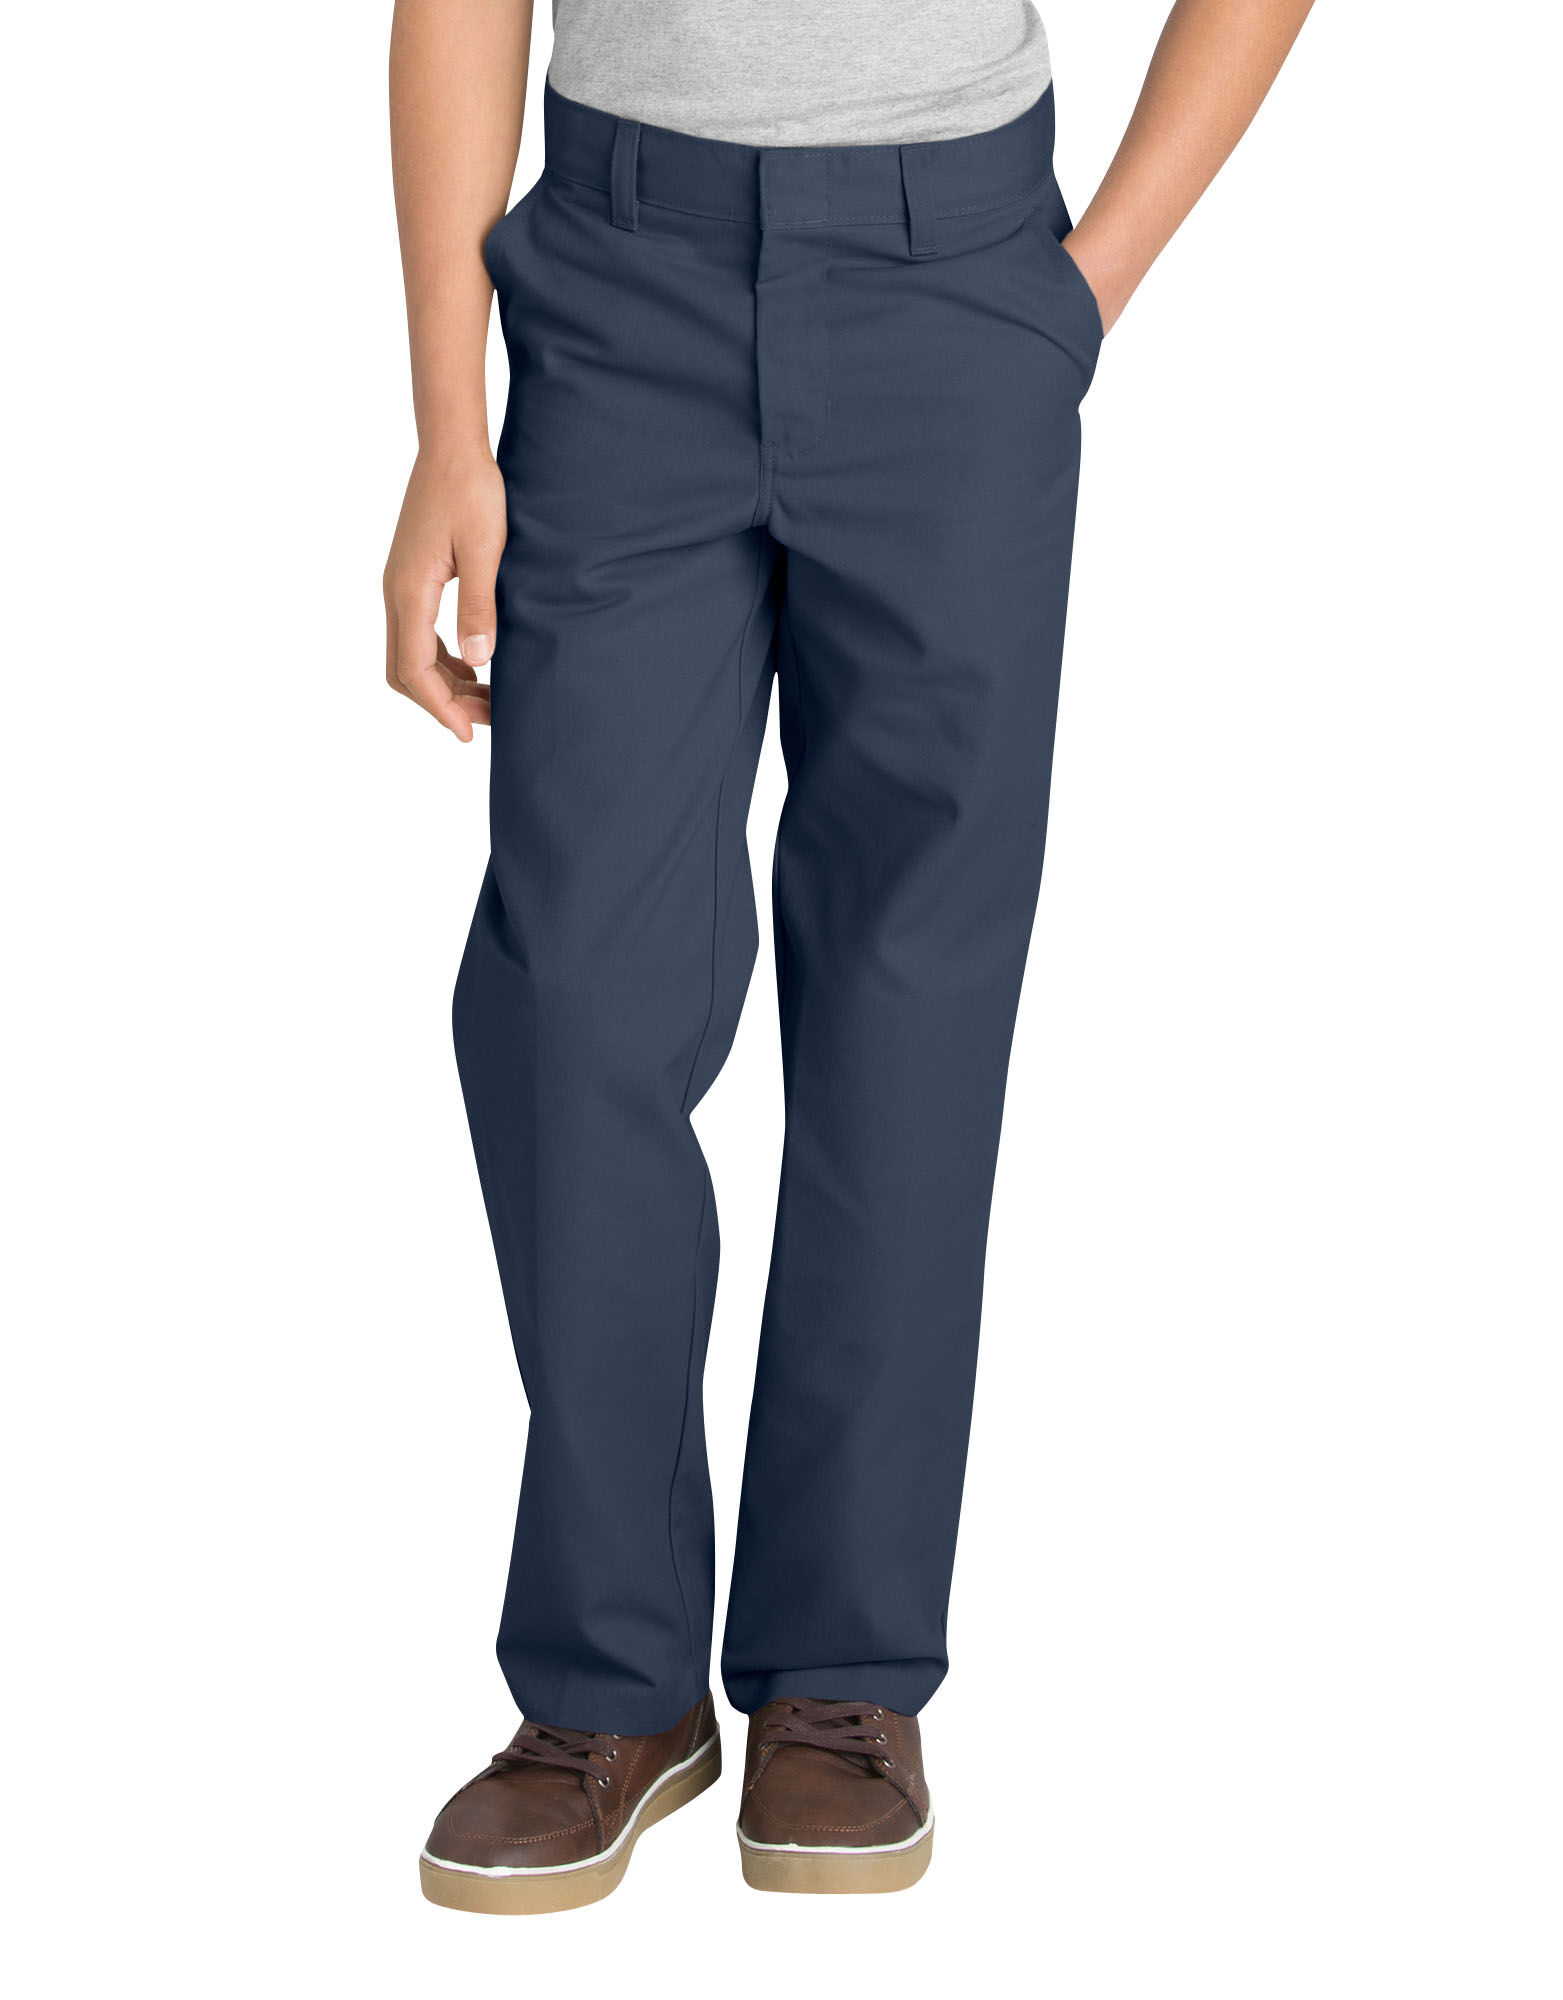 Dickies Boys Pants Flat Front FlexWaist Size 8-18 KP321 Flex Waist Adjustable 